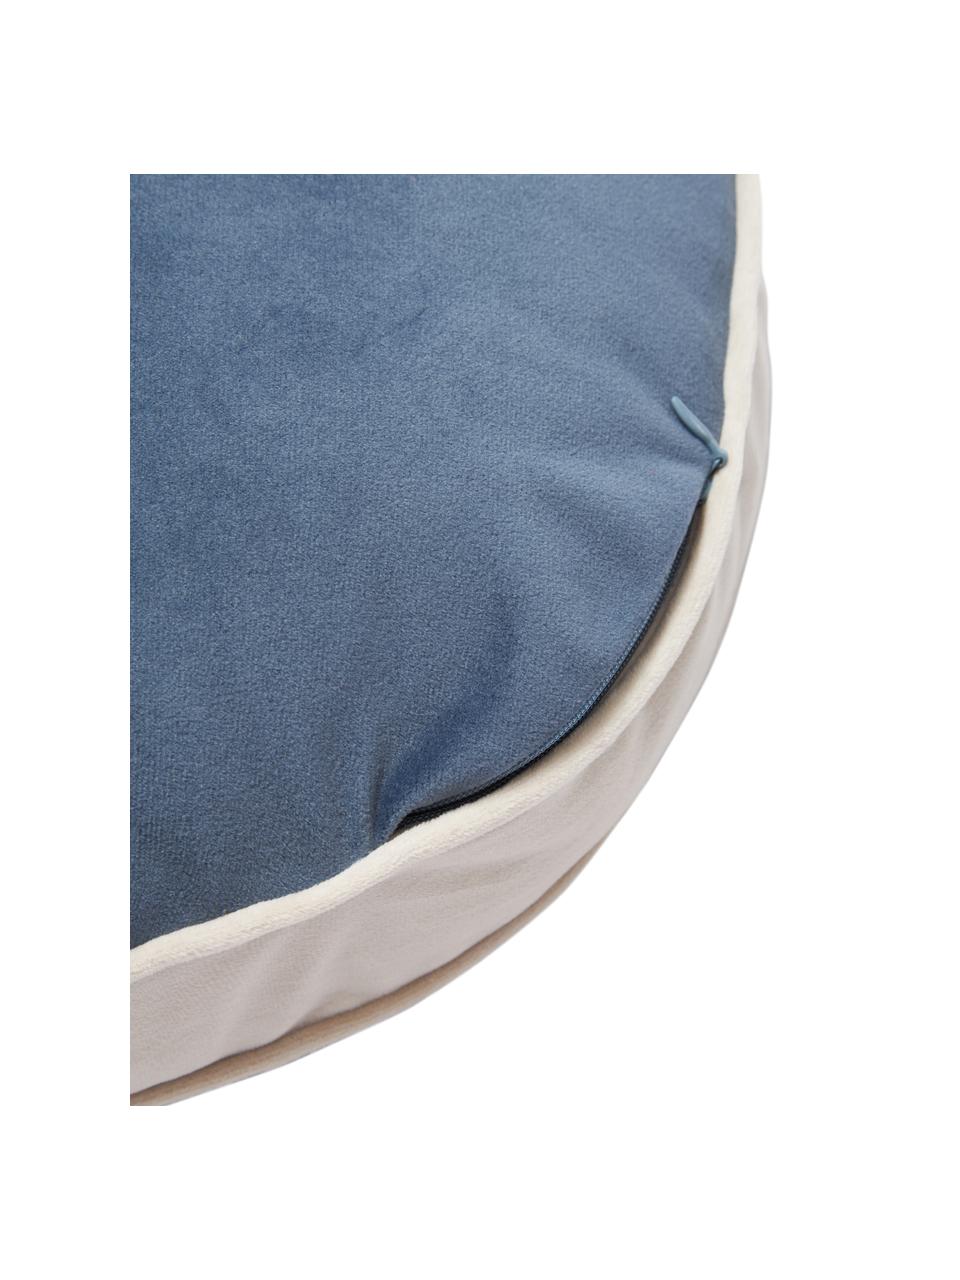 Cuscino rotondo in velluto avorio/blu Dax, 100% velluto di poliestere, Beige, blu, Ø 40 cm